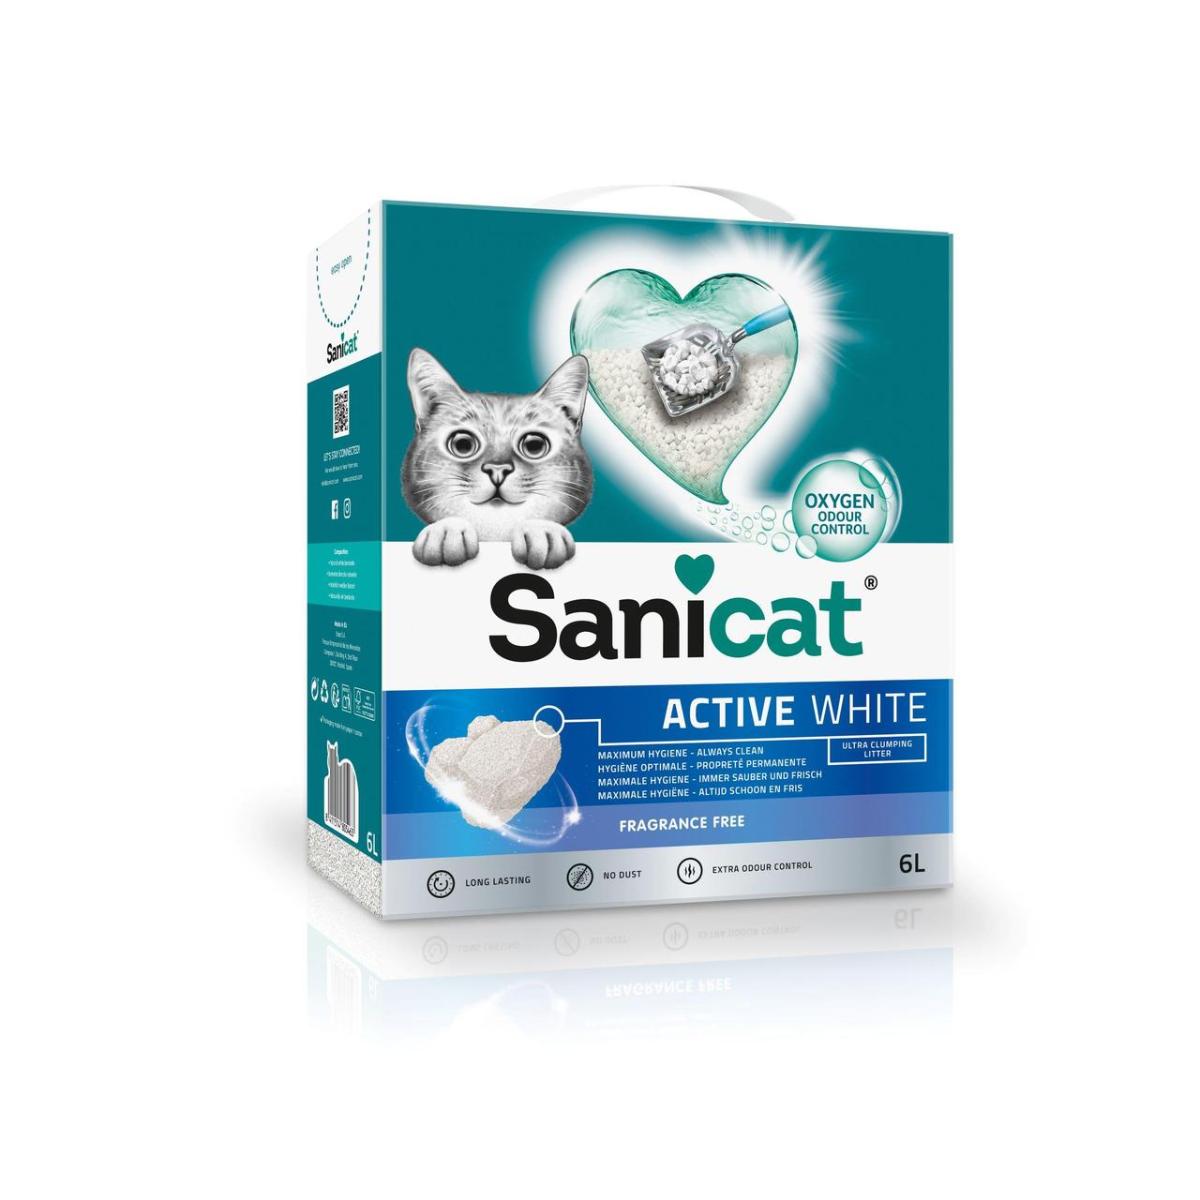 SANICAT Active White, neparfumat, așternut igienic pisici, granule, bentonită, neaglomerant, neutralizare mirosuri, 6l